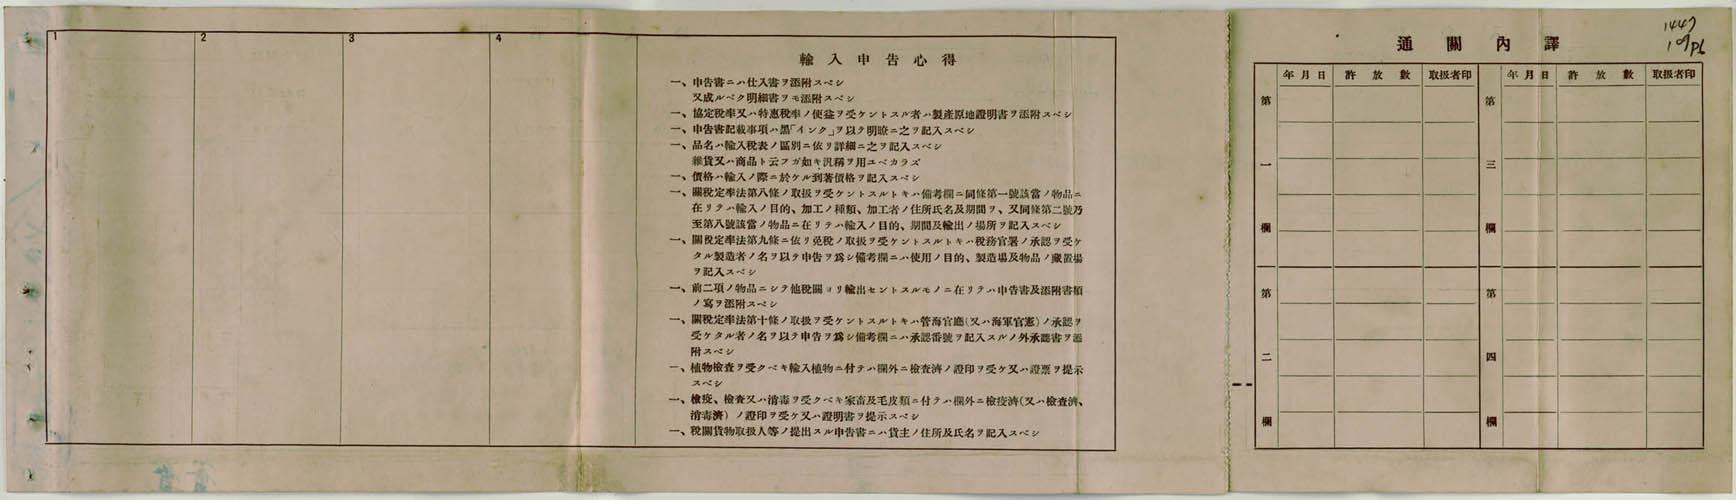 輸入申告書(日本石油株式會社  基隆私設保稅工場)